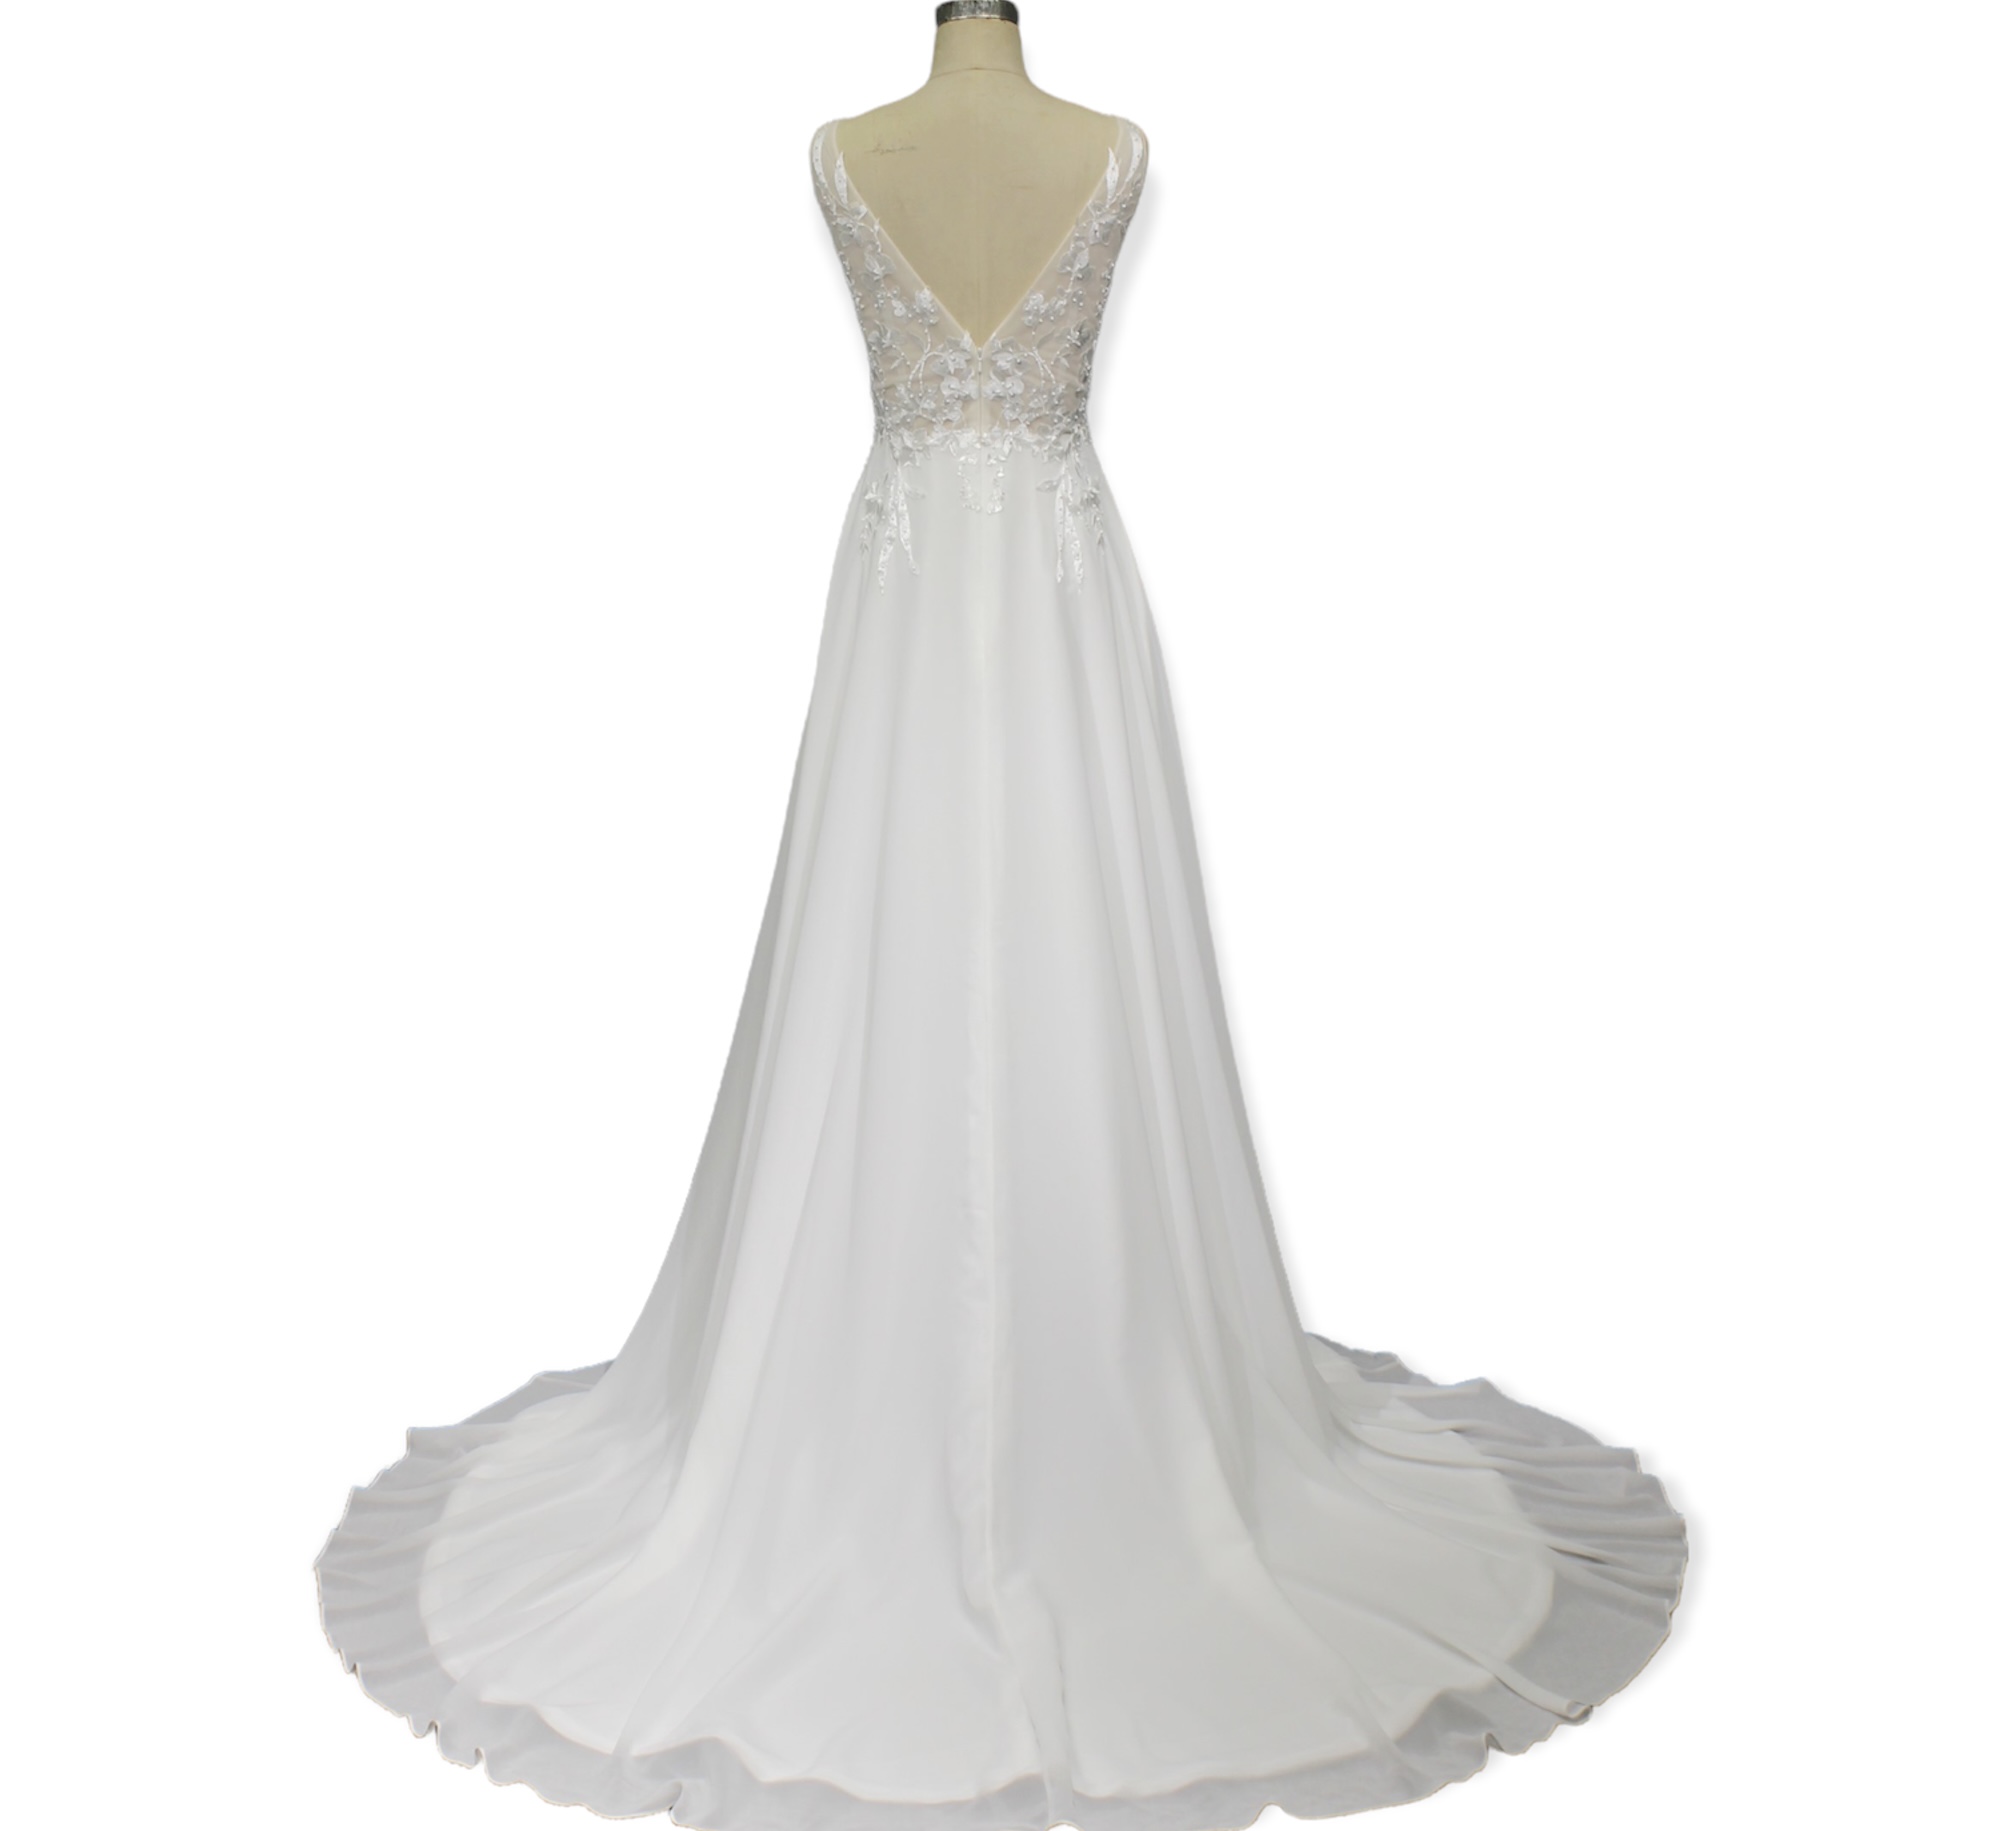 JOLENE - Denver, Colorado | Guillermo Pharis Bridal Shop | Custom Made Gowns